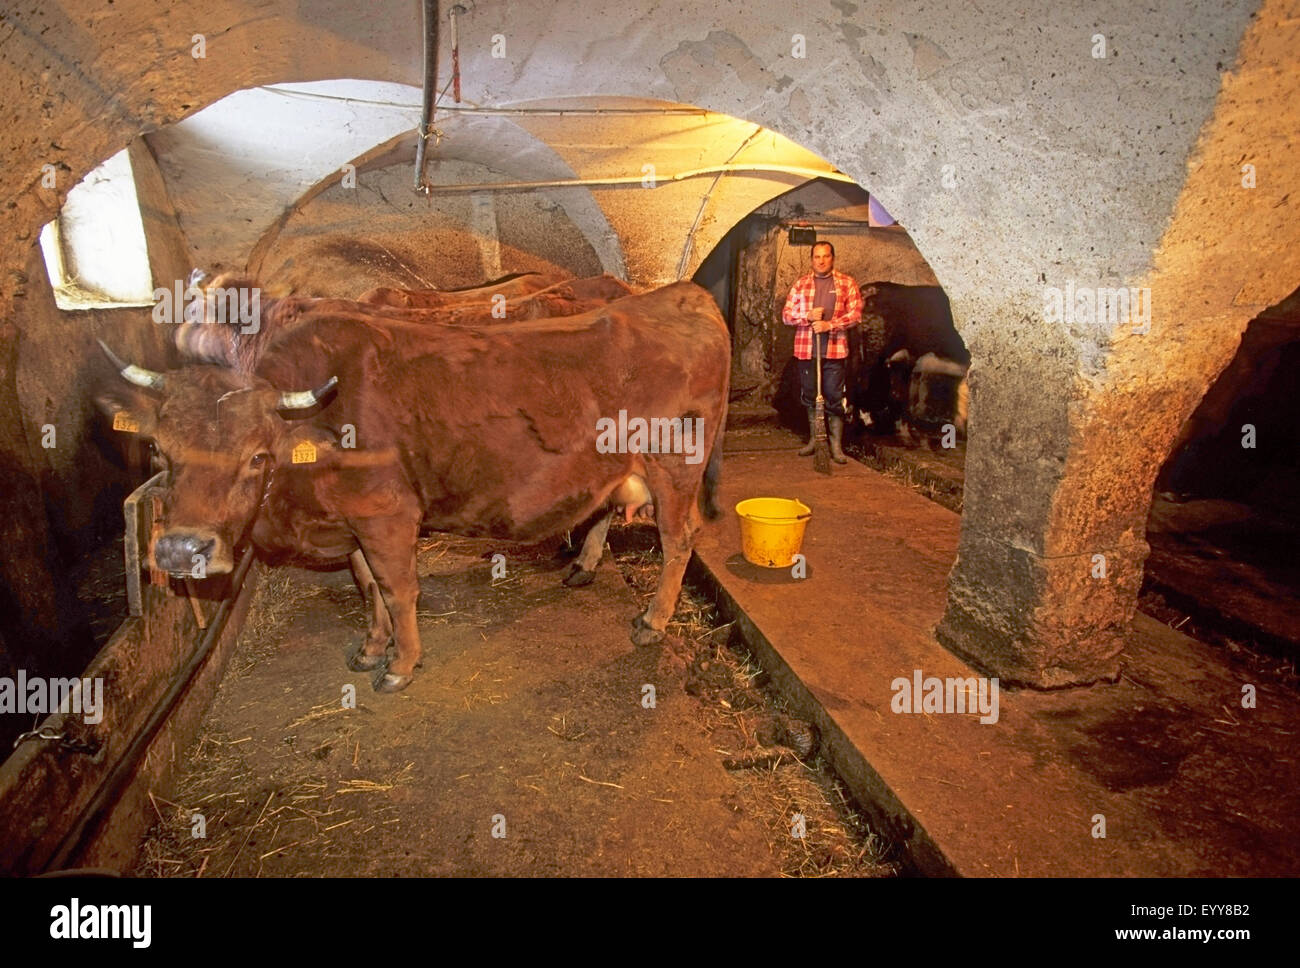 Les bovins domestiques (Bos primigenius f. taurus), à l'intérieur d'une étable, France, Savoie, Saint Martin de Belleville Banque D'Images